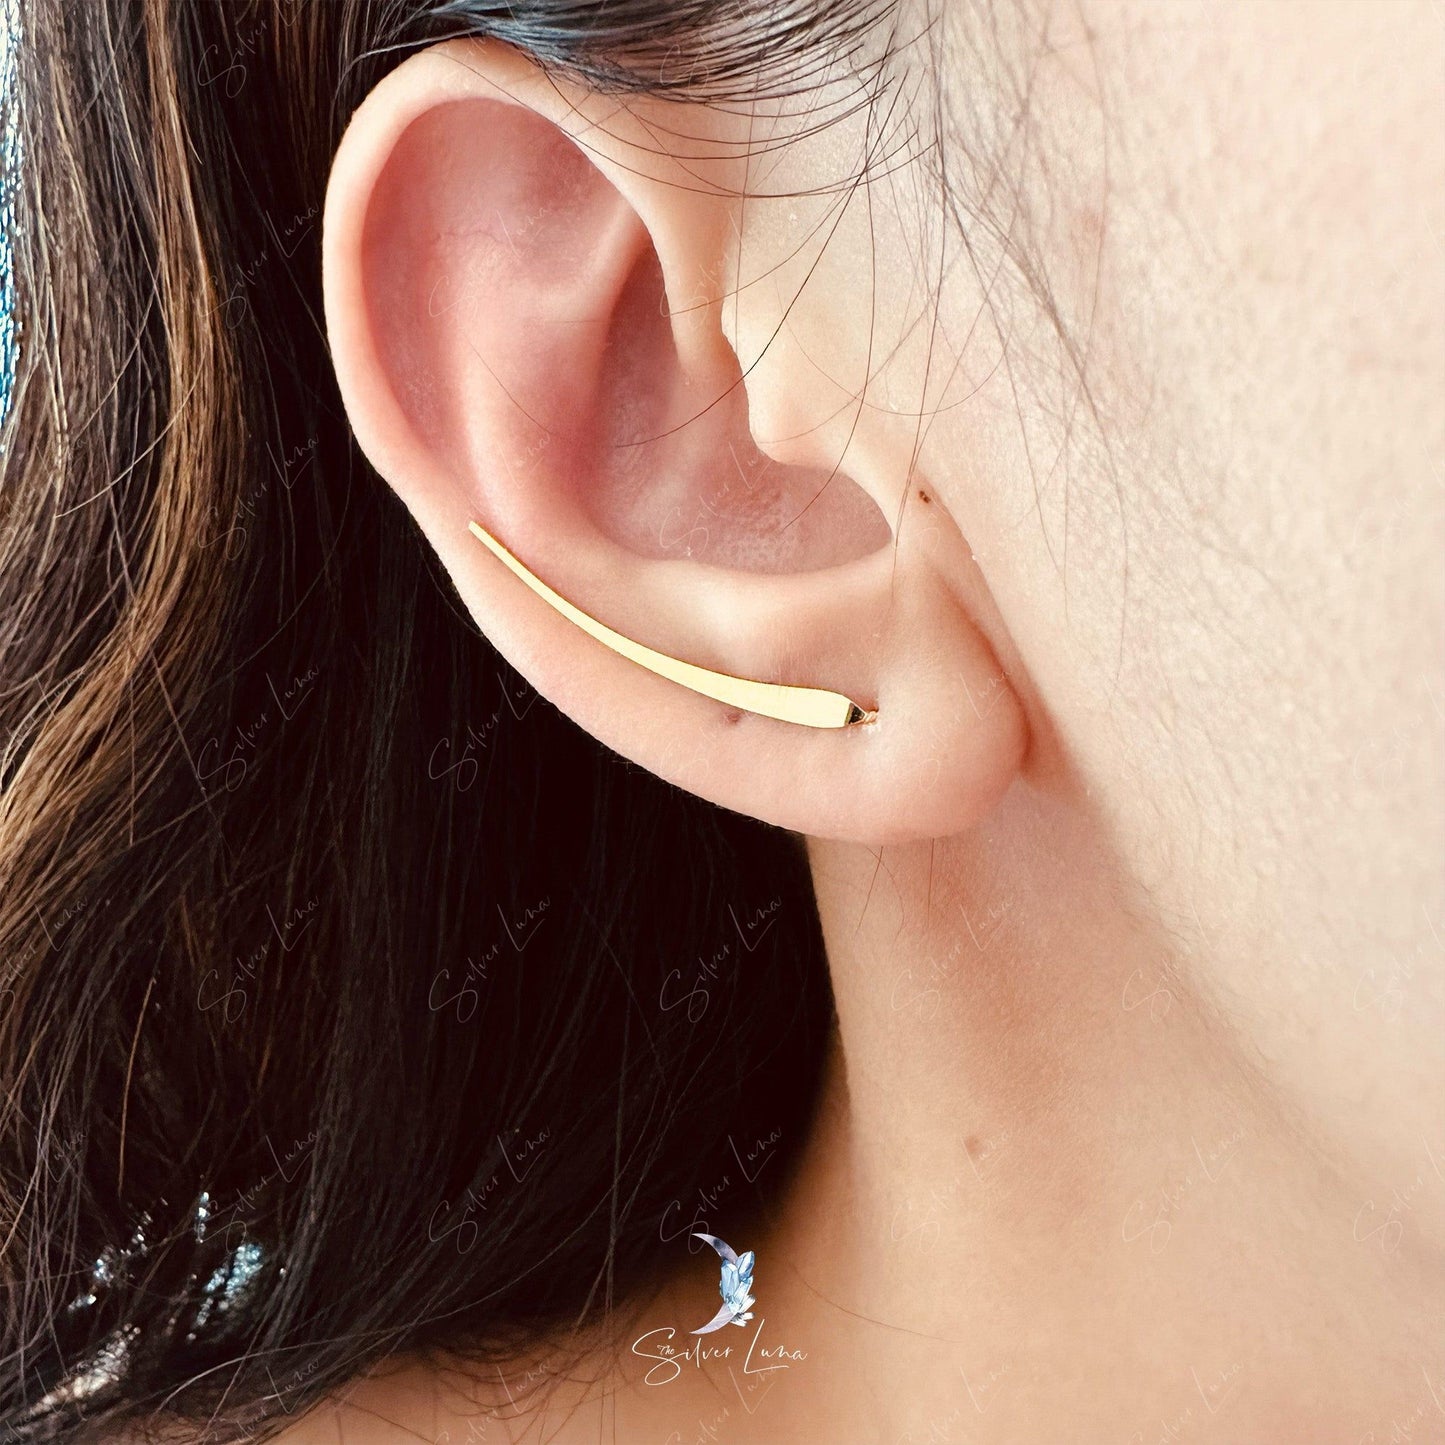 Minimalist stick ear climber earrings in sterling silver